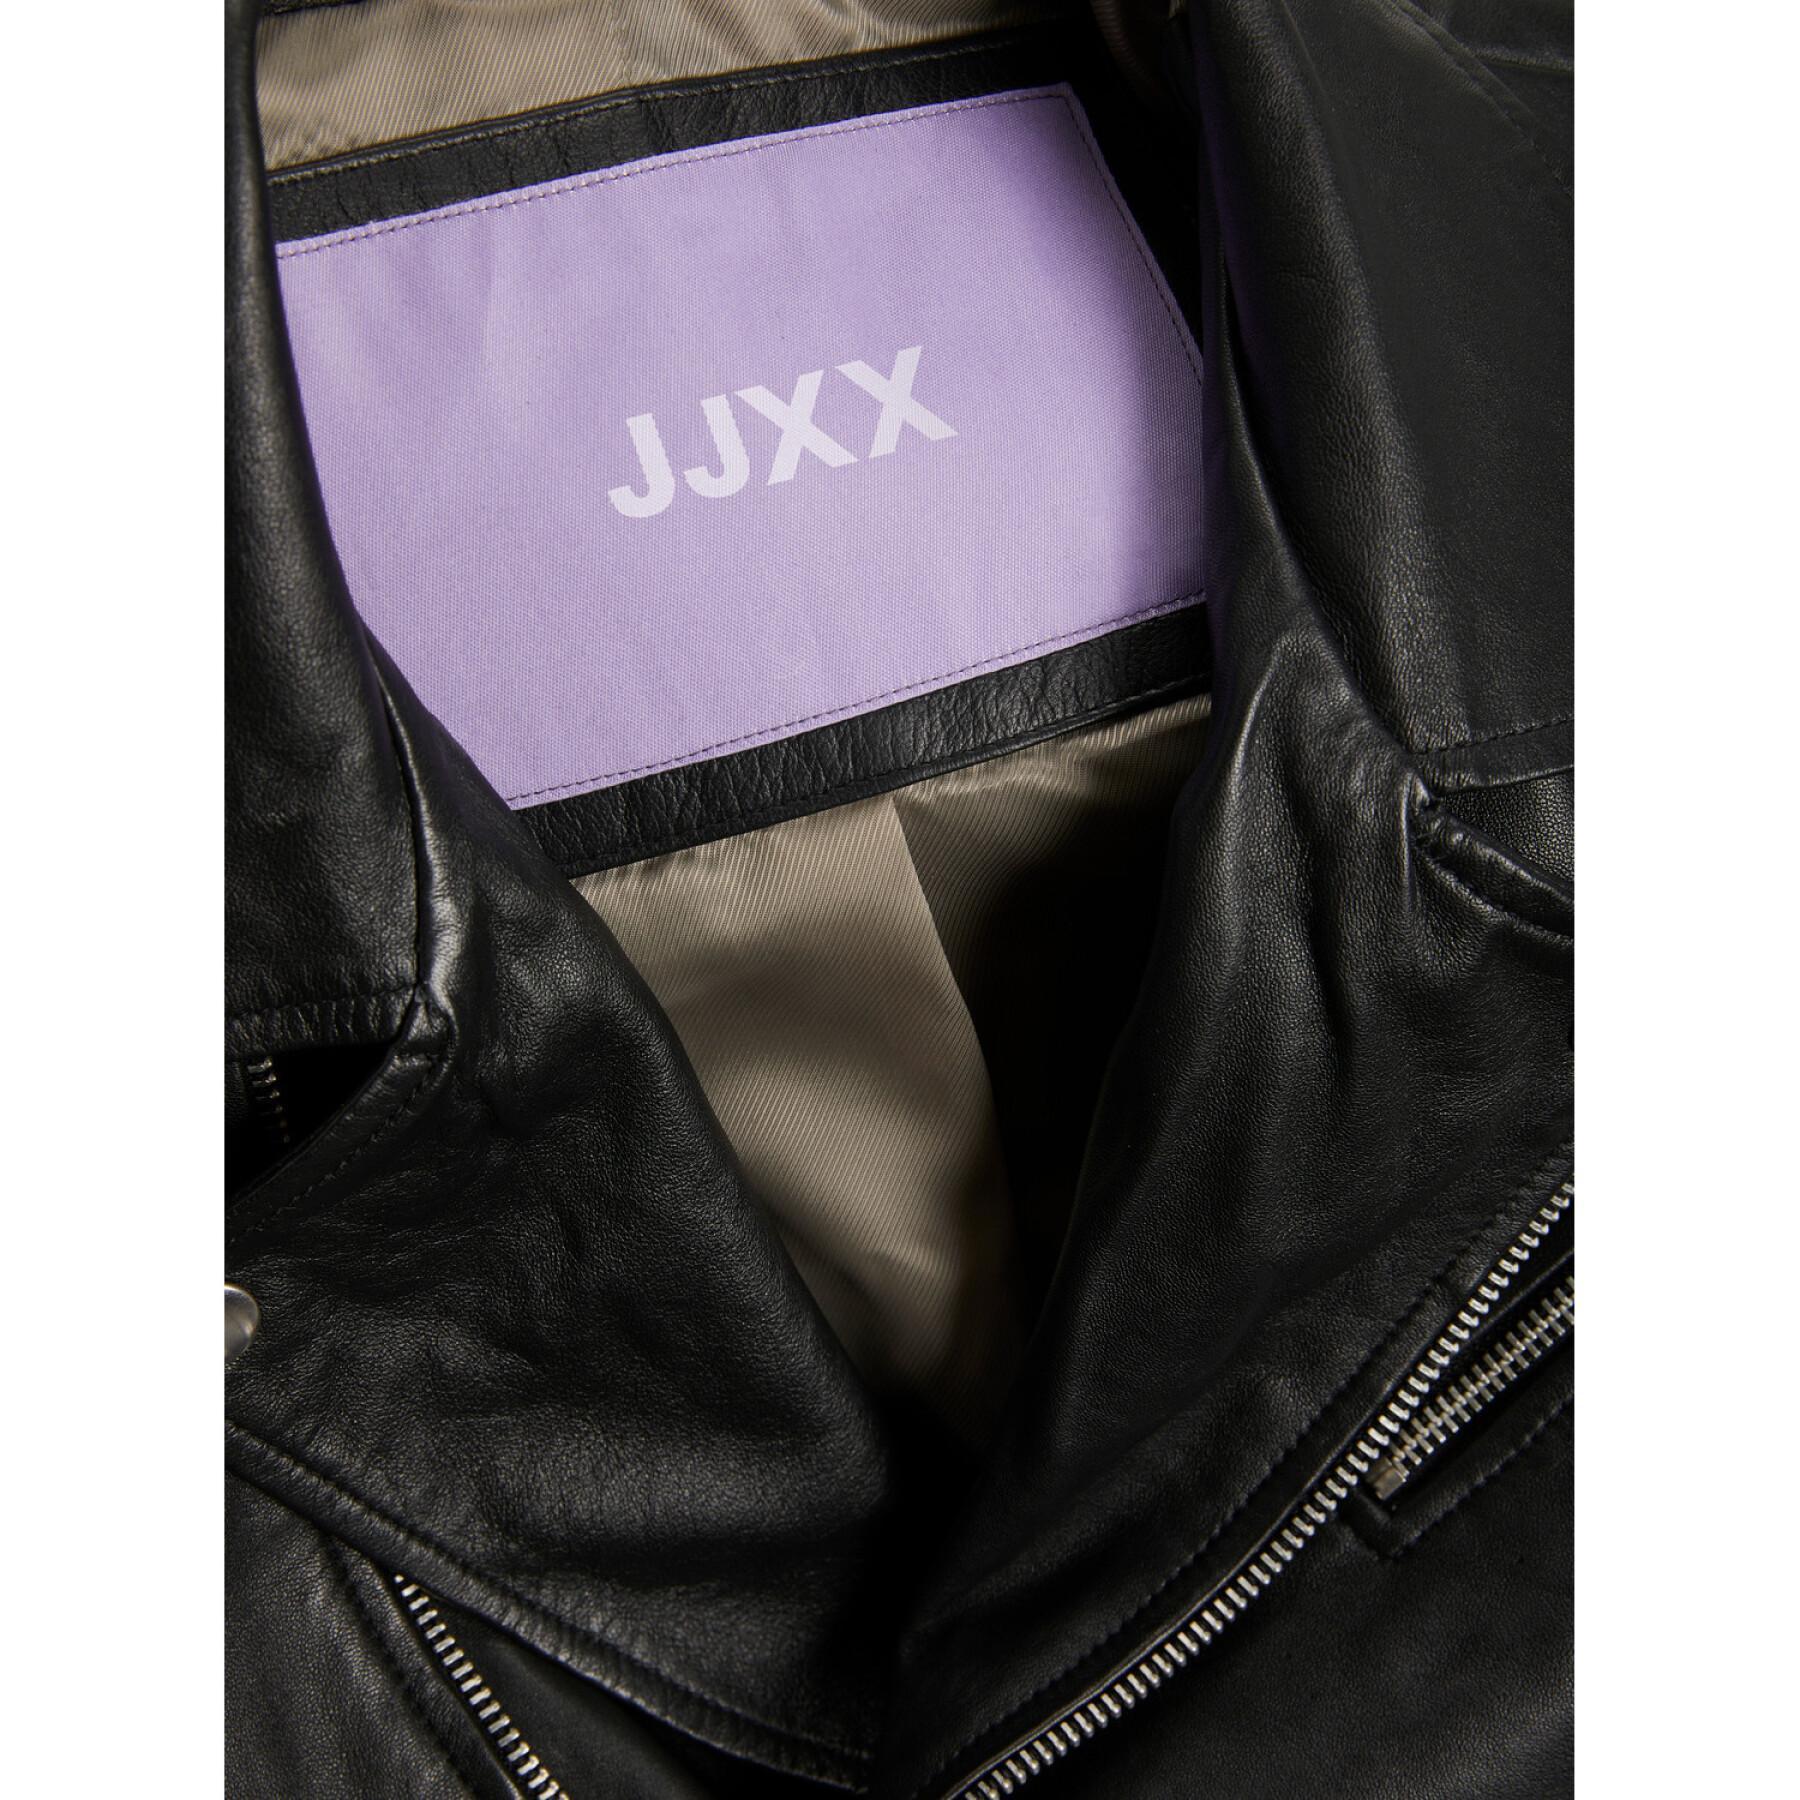 Leren jas voor vrouwen JJXX Calvin Leather Biker Jkt Noos